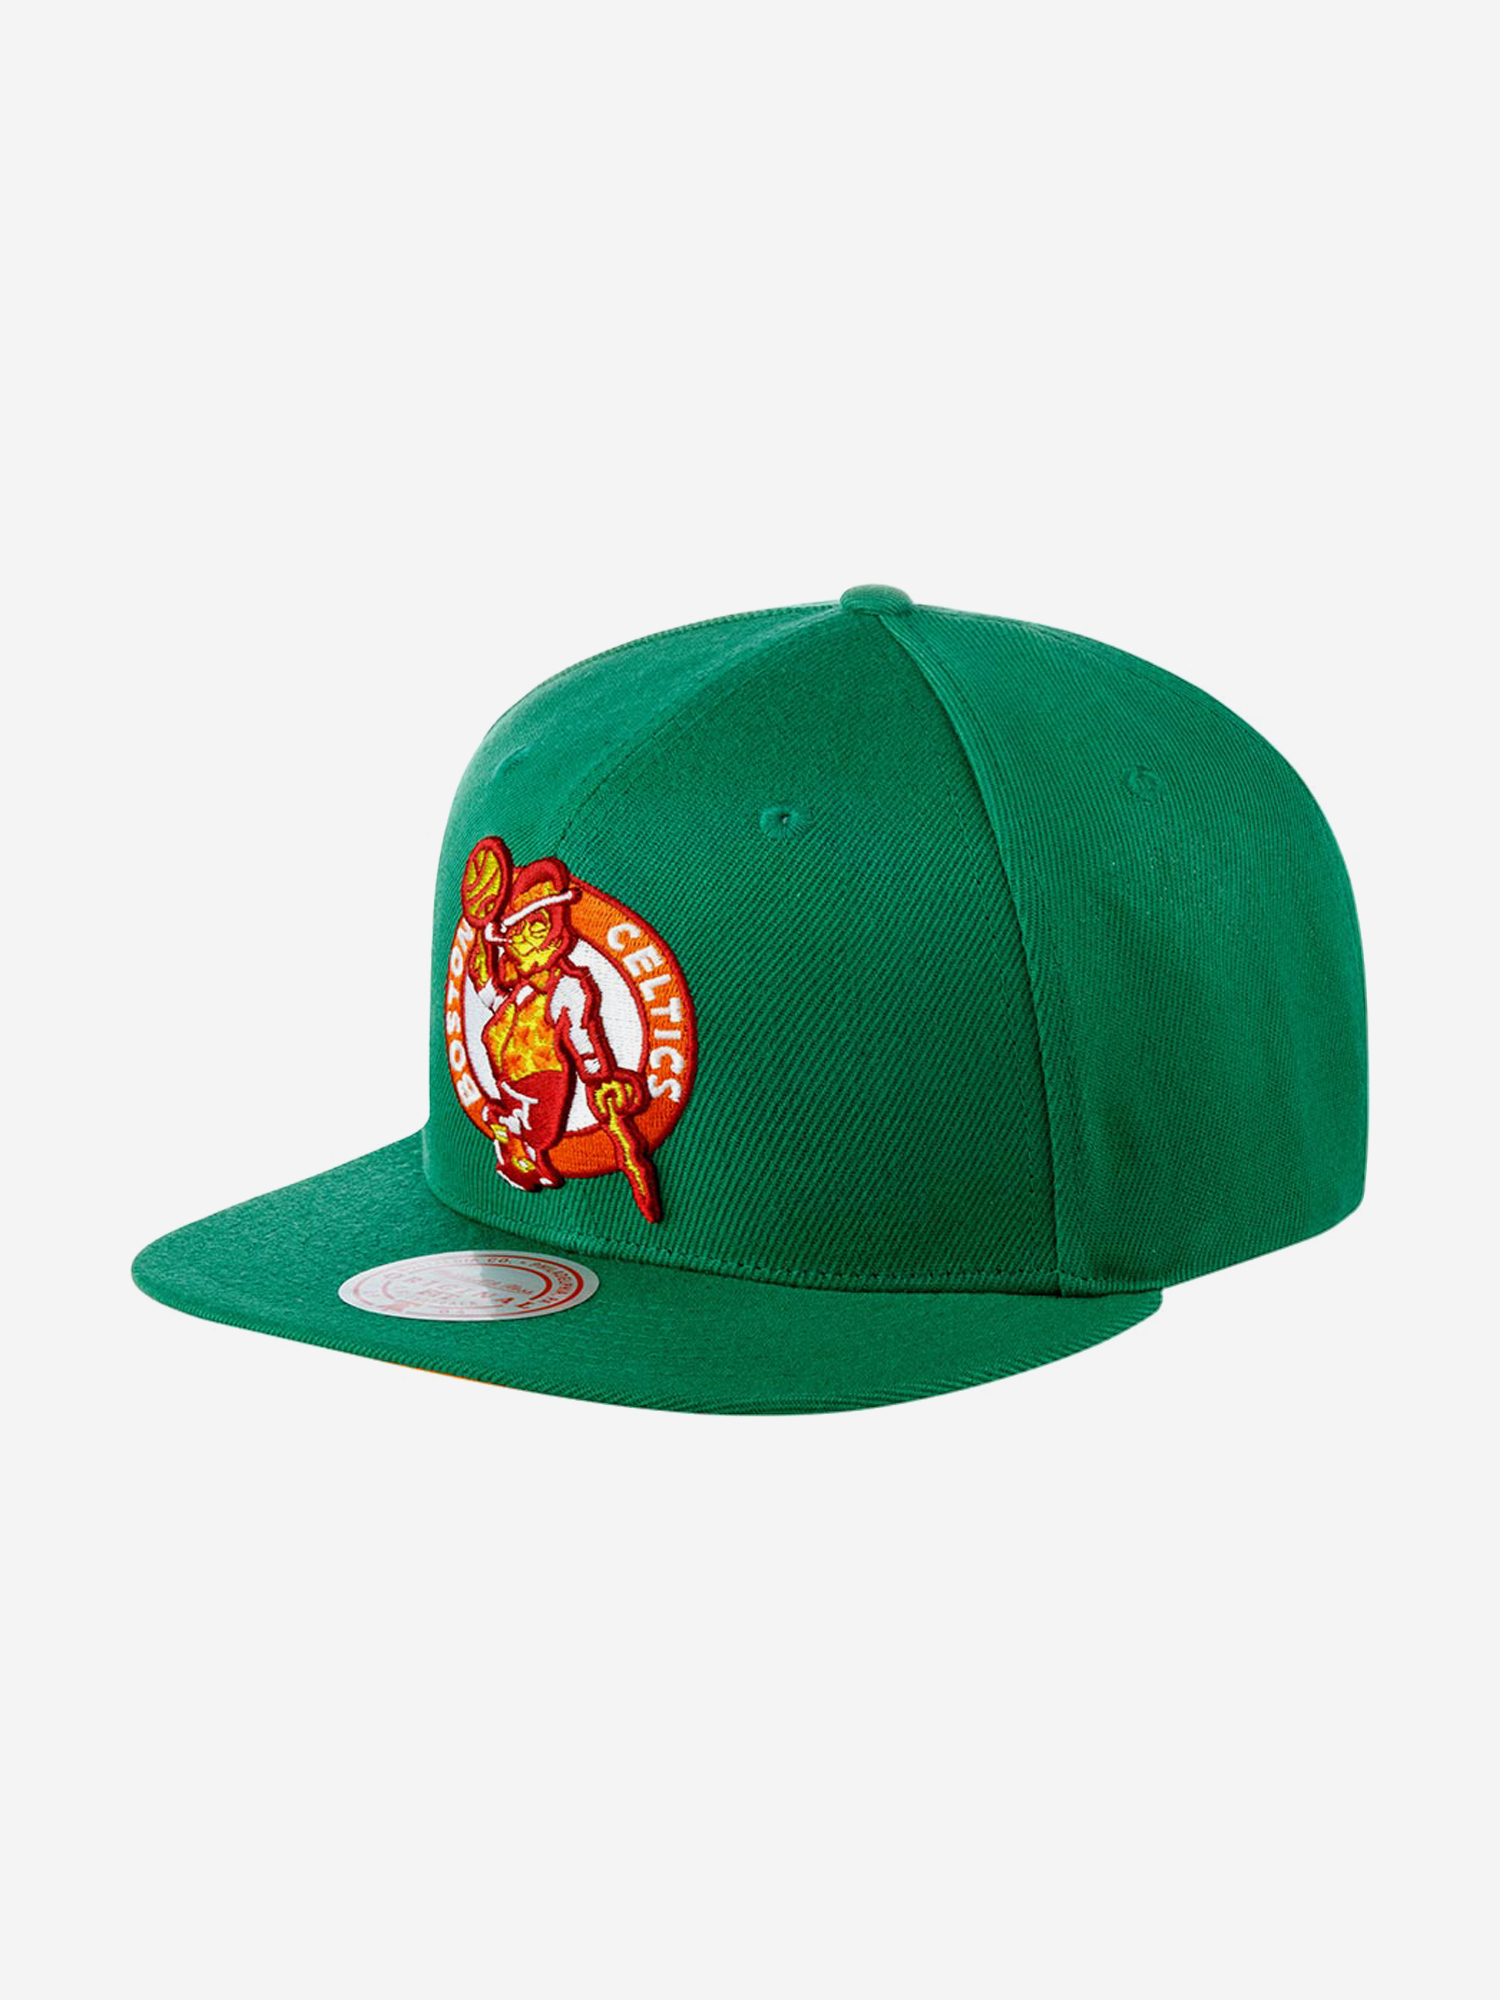 Бейсболка с прямым козырьком MITCHELL NESS 6HSSSH21295-BCEGREN Boston Celtics NBA (зеленый), Зеленый беговел нордпласт 431018 оранжево зеленый